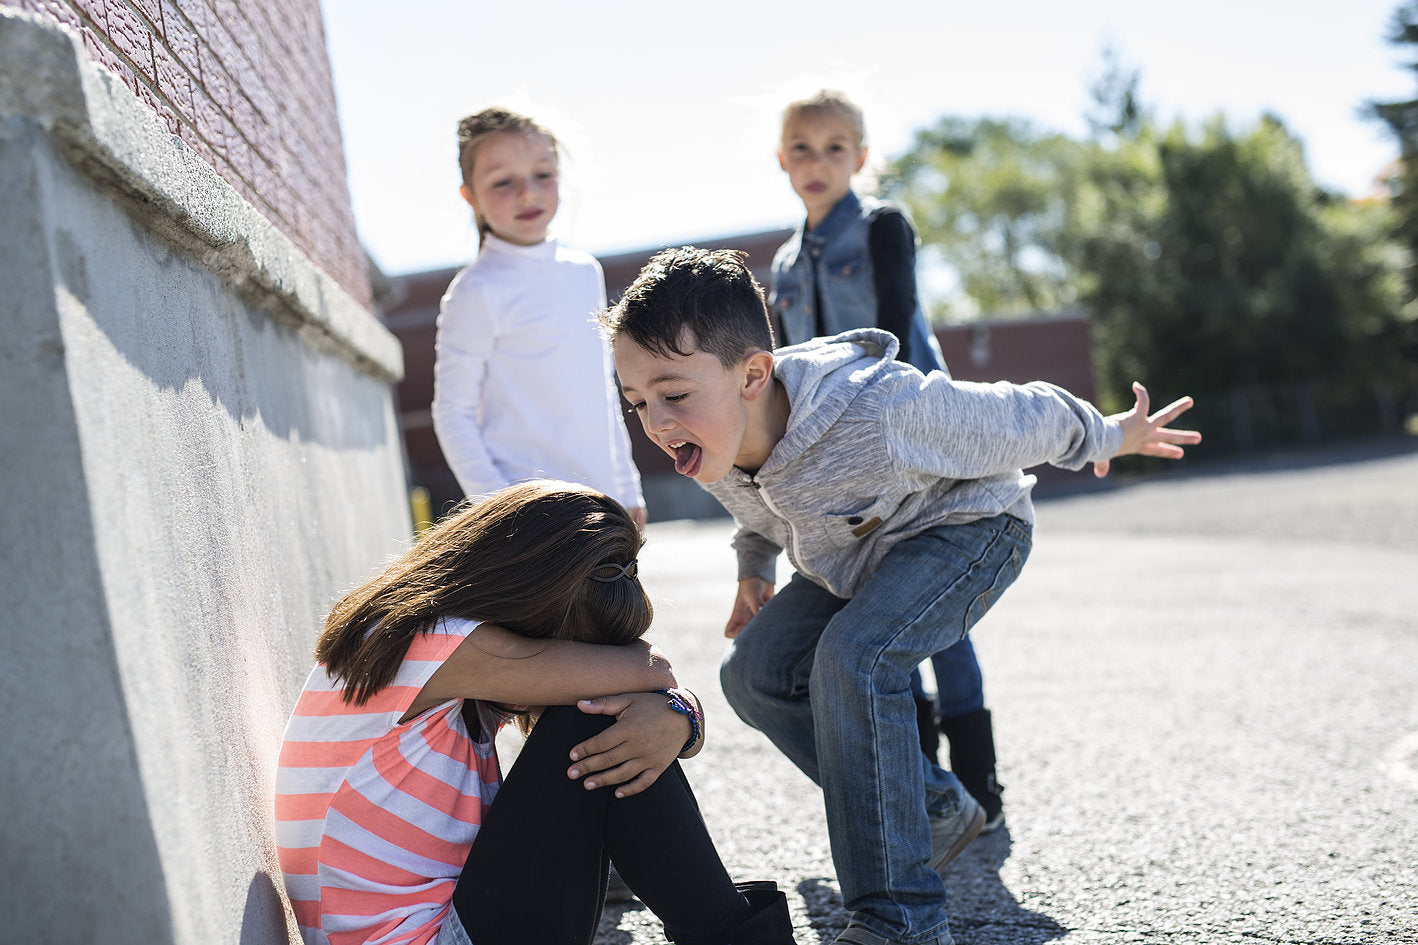 Les moqueries à l'école: comment réagir et rassurer son enfant